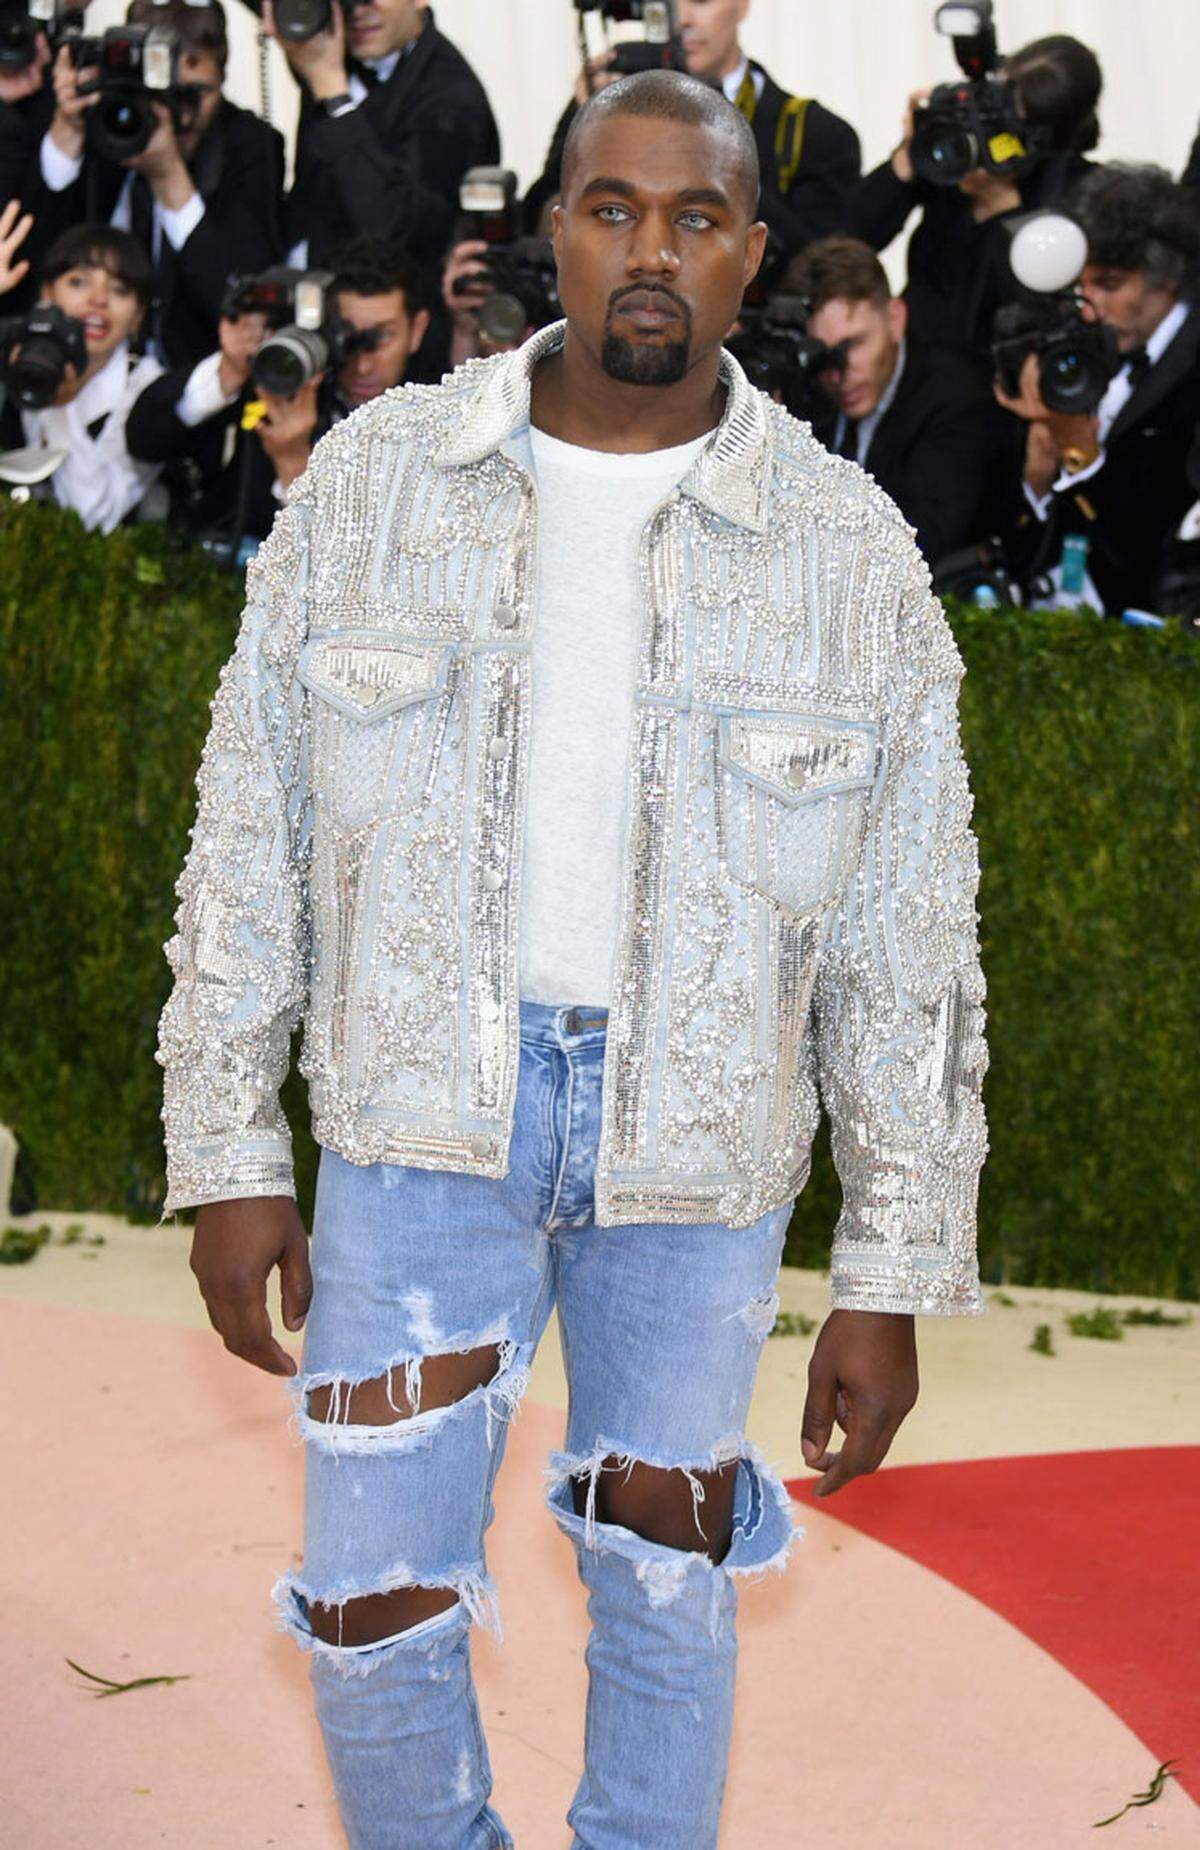 Rapper Kanye West ist für seinen leicht säuerlichen Gesichtsausdruck bekannt.